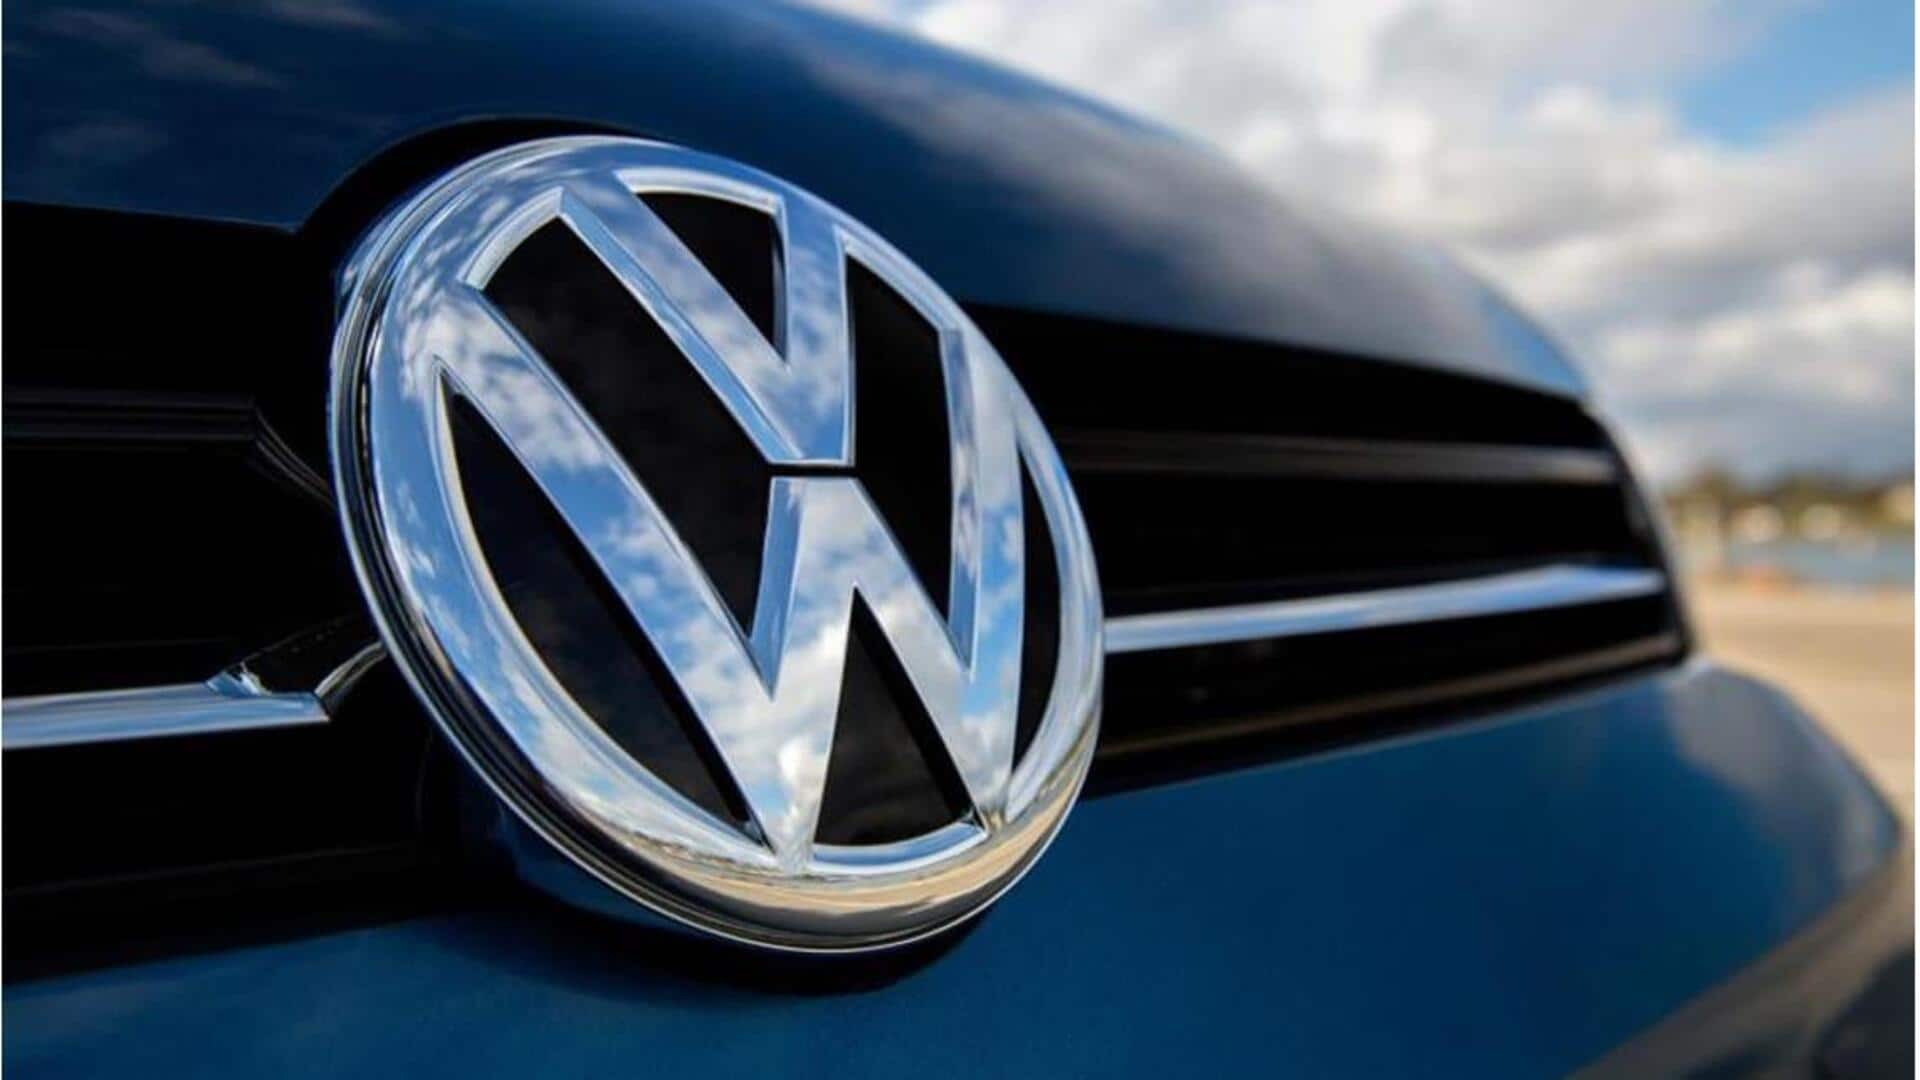 Volkswagen to cut jobs in struggling VW brand